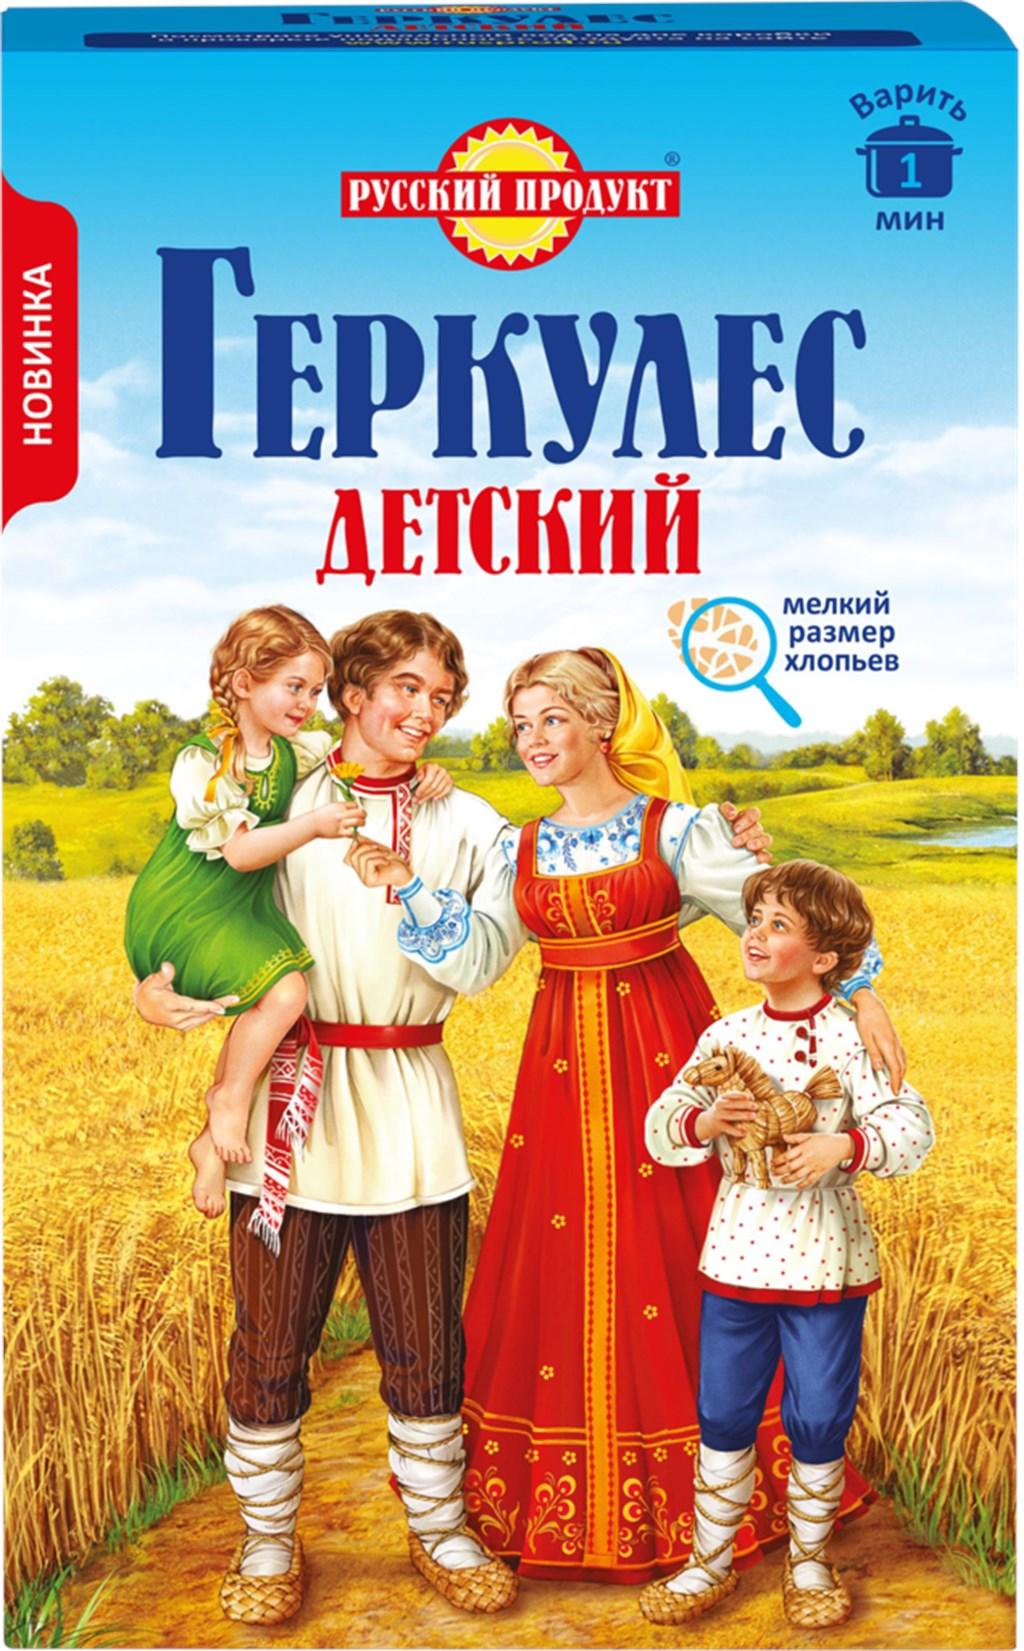 Хлопья овсяные геркулес детский Русский Продукт, 350 гр., картон